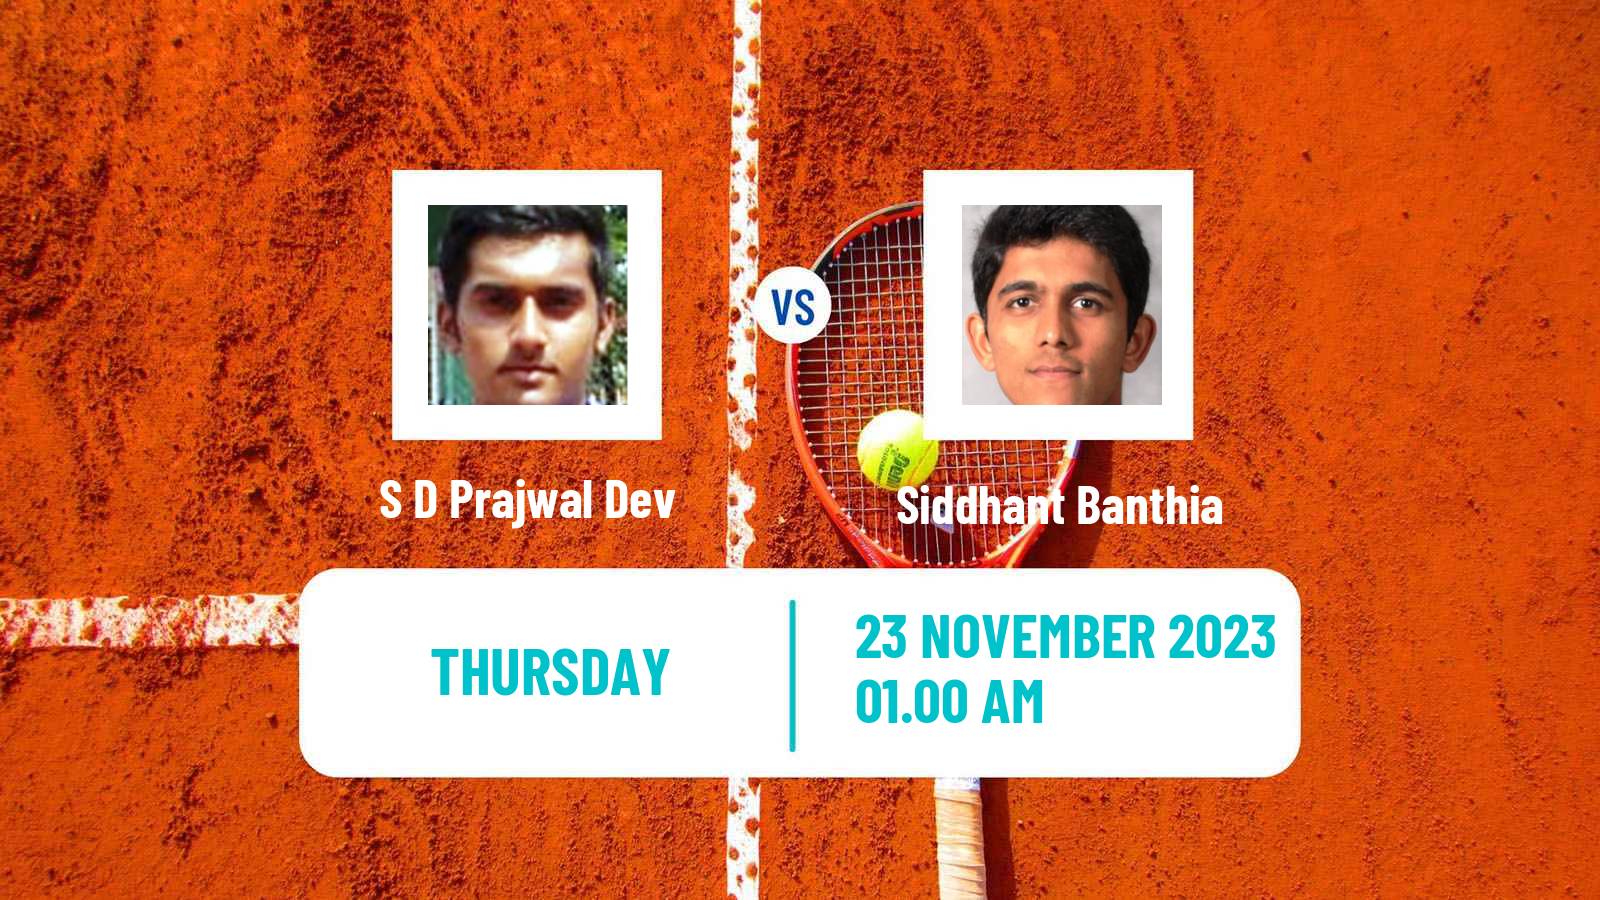 Tennis ITF M25 Mumbai Men S D Prajwal Dev - Siddhant Banthia